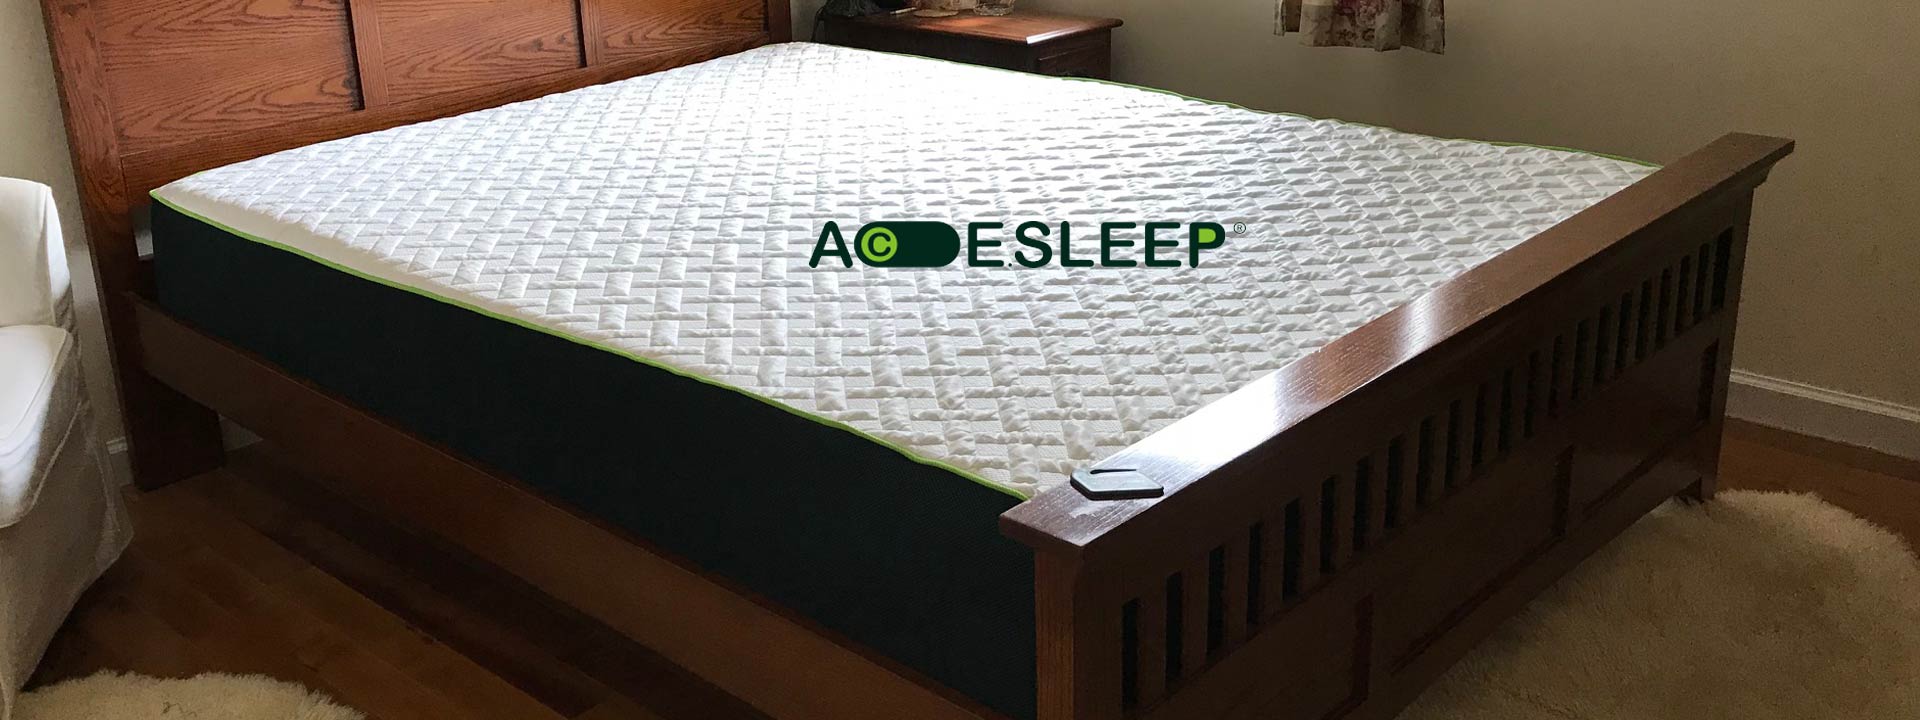 Acesleep Mattress Review: A shockingly comfortable mattress